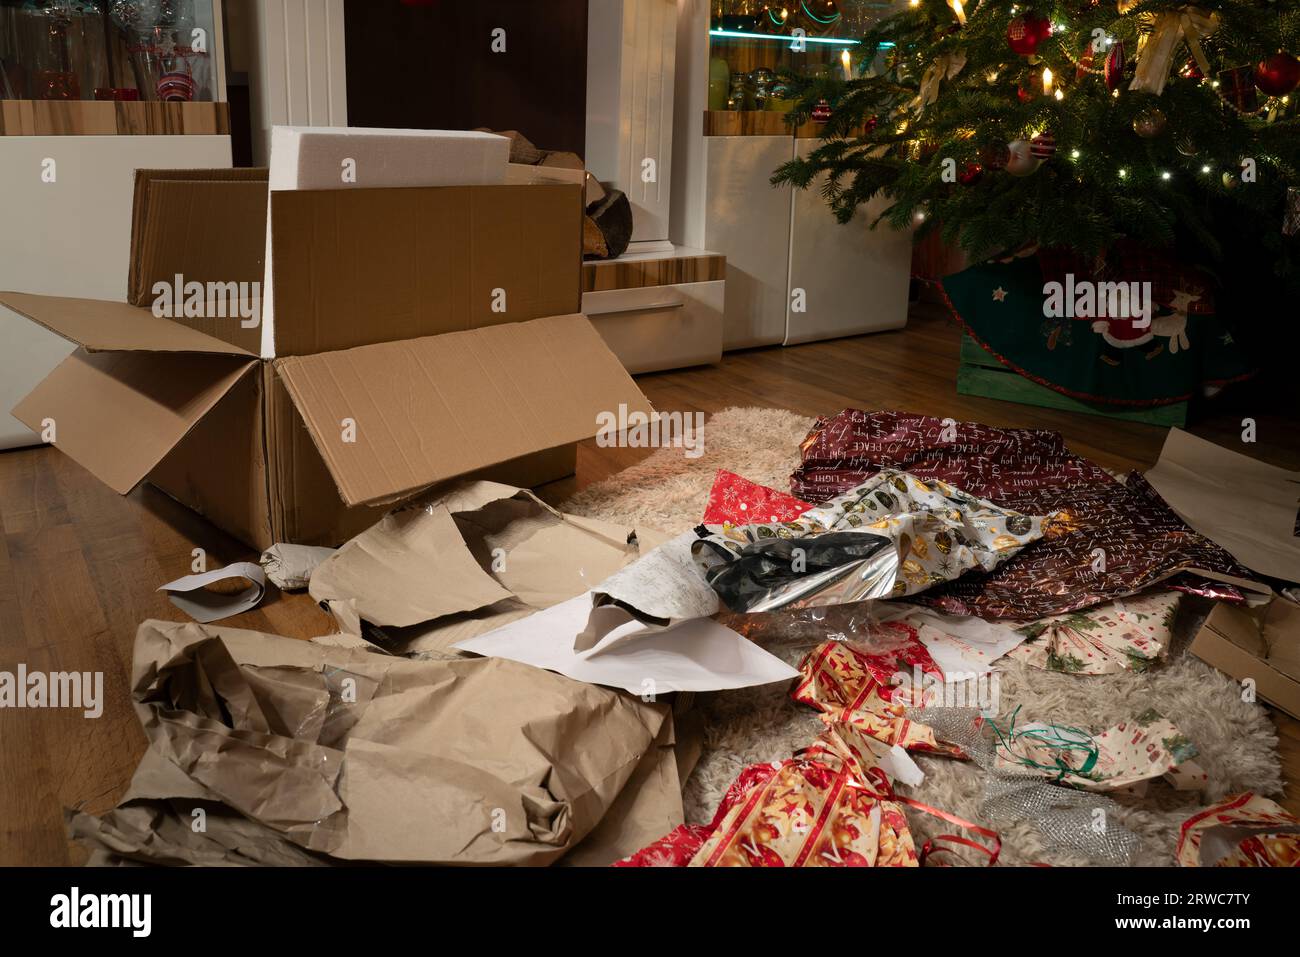 C'est la veille de Noël. Les cadeaux ont été déballés. Dans le salon de Noël, il y a un chaos de papier d'emballage et de boîtes sous le tr de Noël Banque D'Images